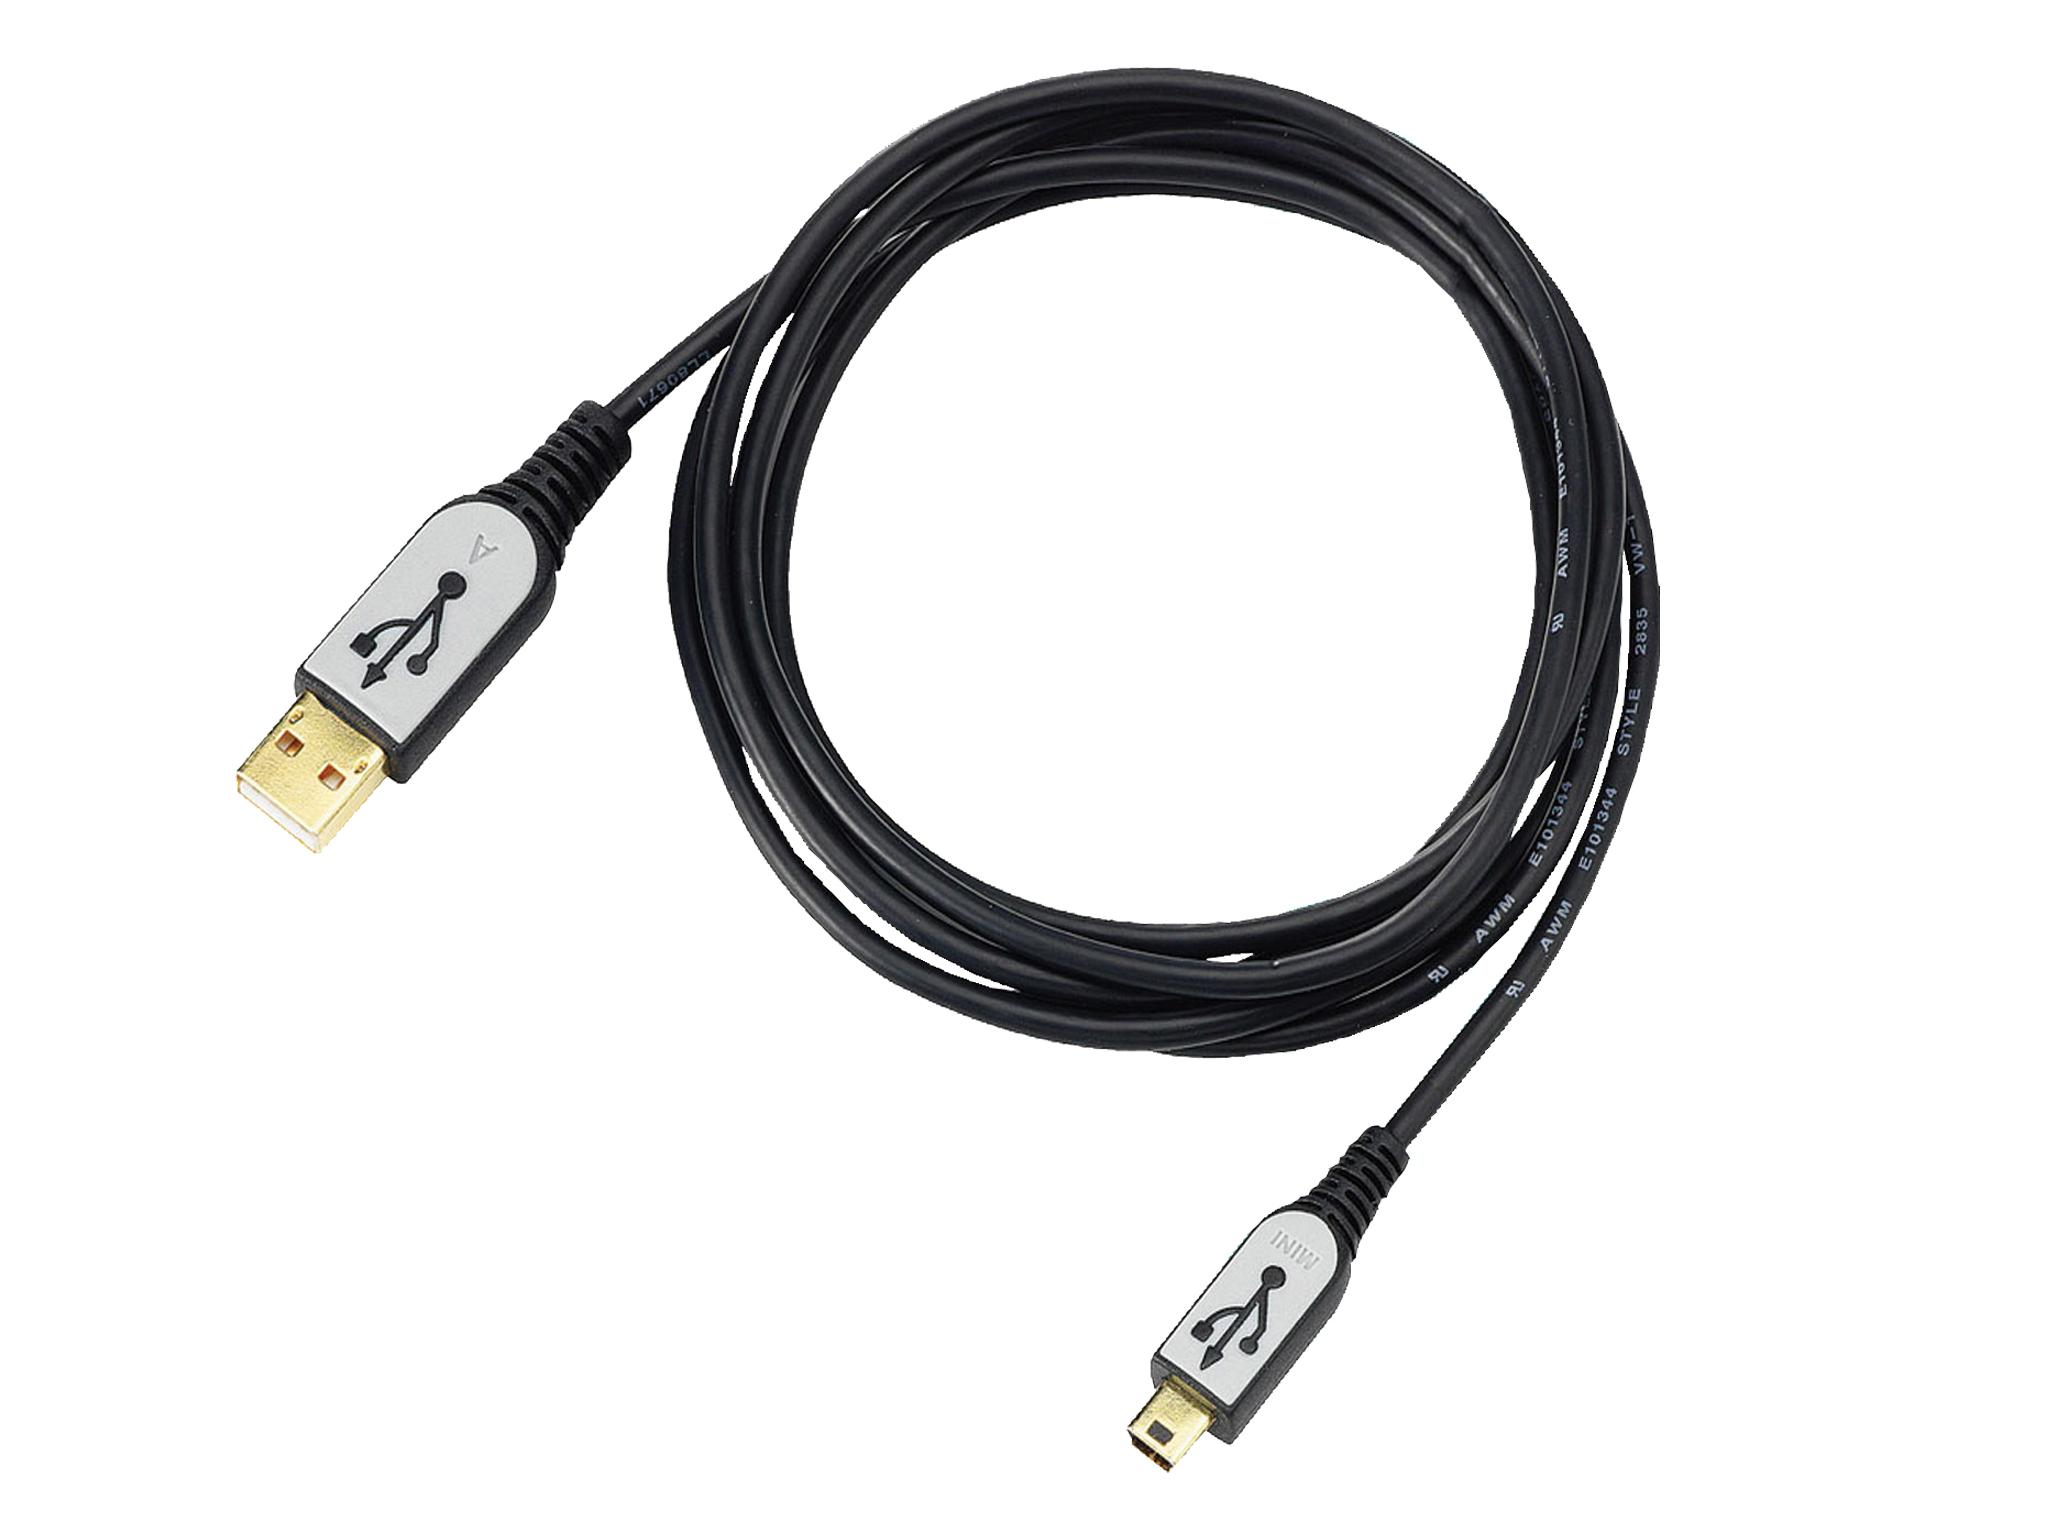 Foto Cable Sitecom mini usb 2.0 a/b cable 1.8m [CN-207] [8716502001866]